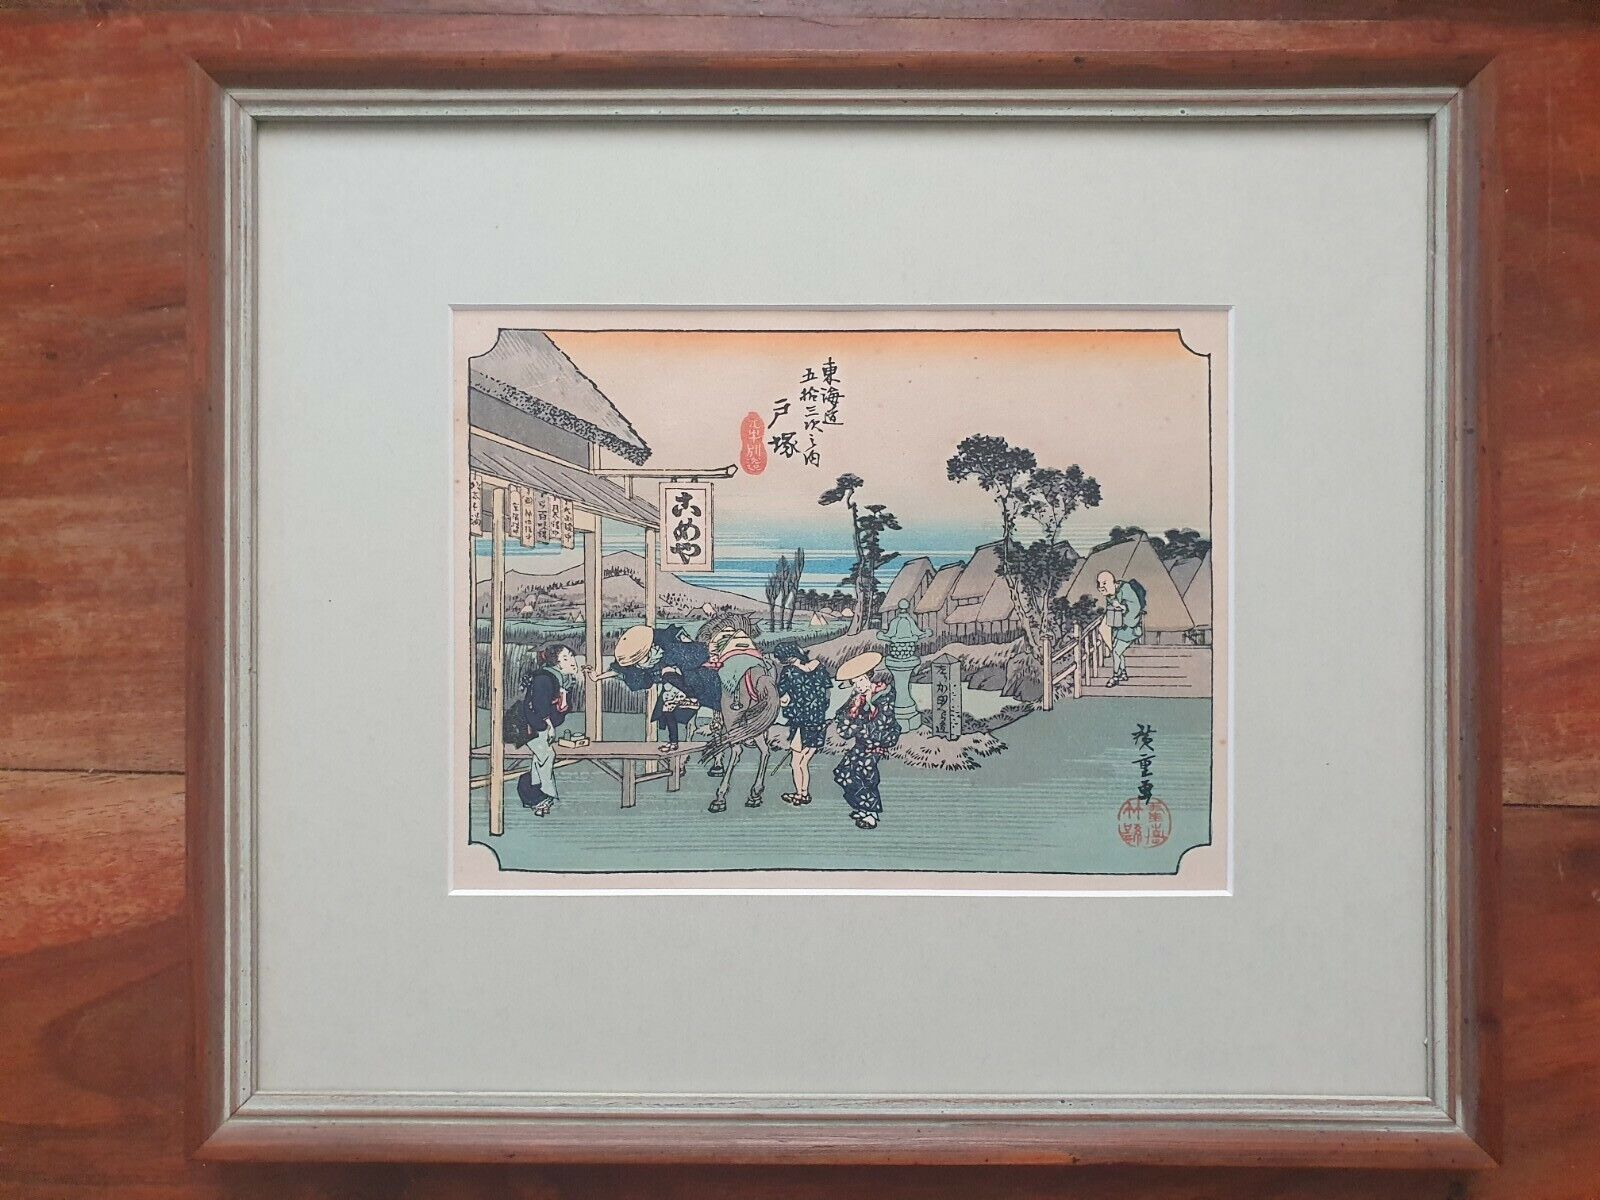 Totsuka by Hiroshige Ando. Vintage Japanese Woodblock print. Tokaido Station 